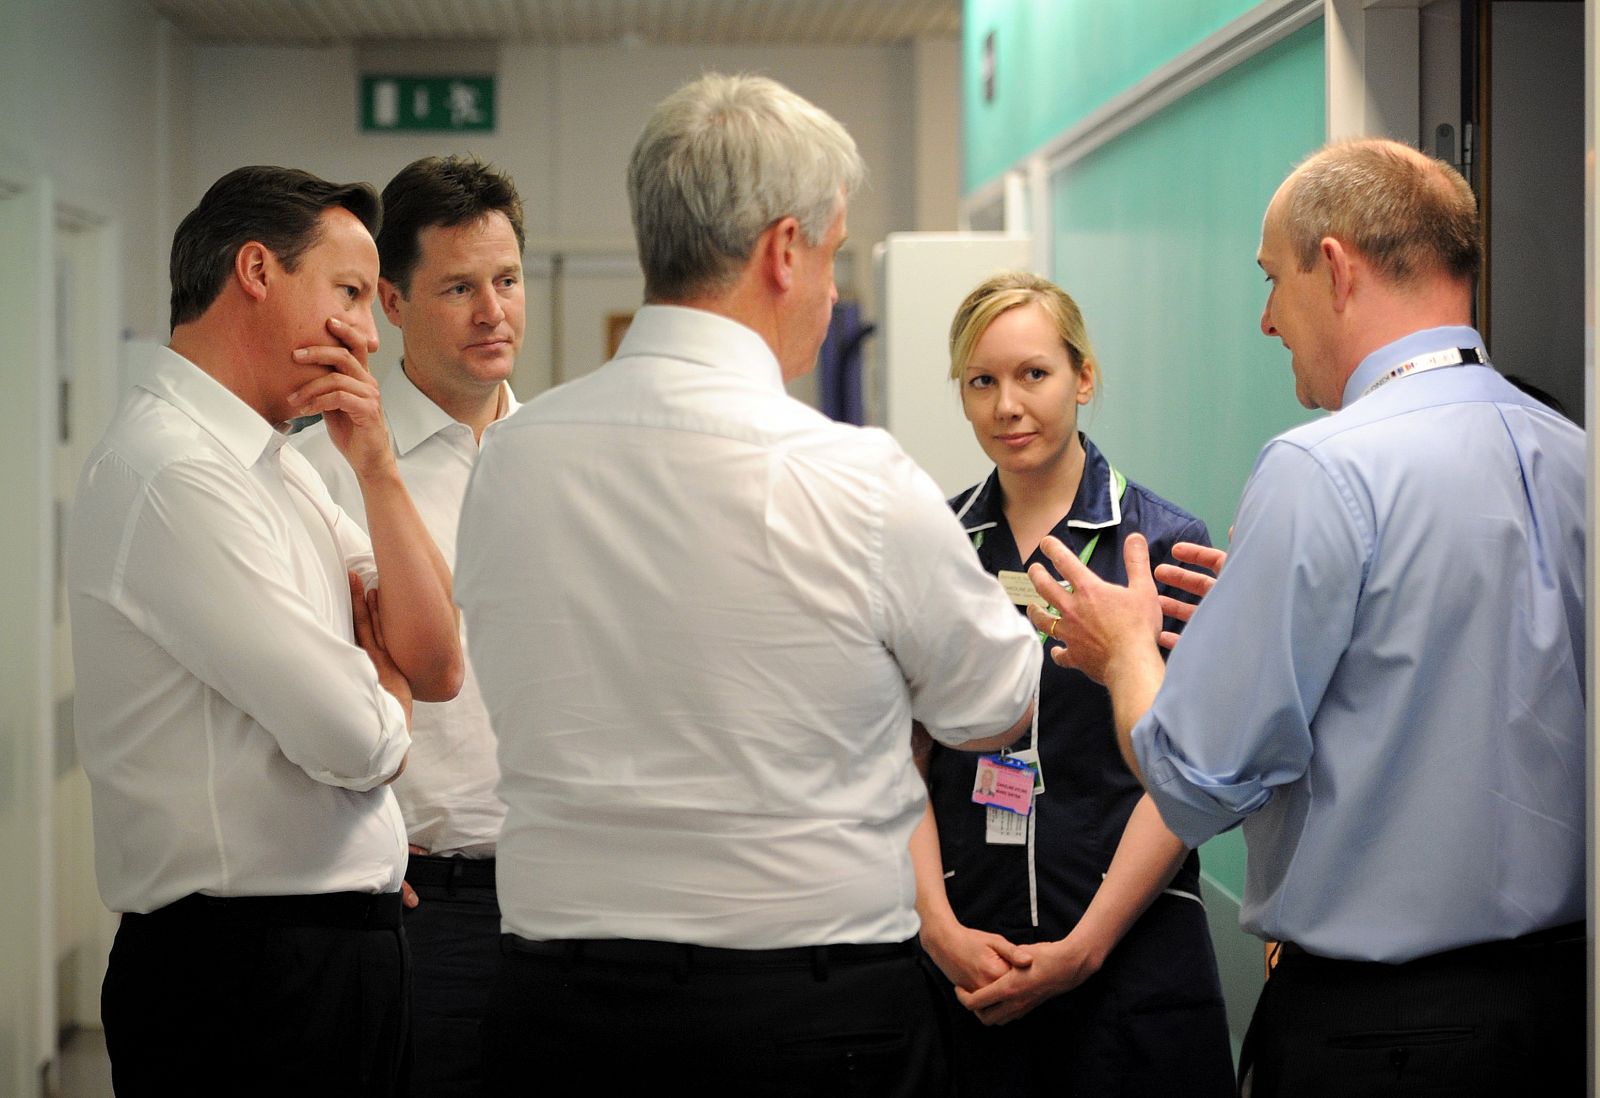 El primer ministro británico, junto a su ministro de Sanidad y el viceprimer ministro escuchan a un doctor y una enfermera.